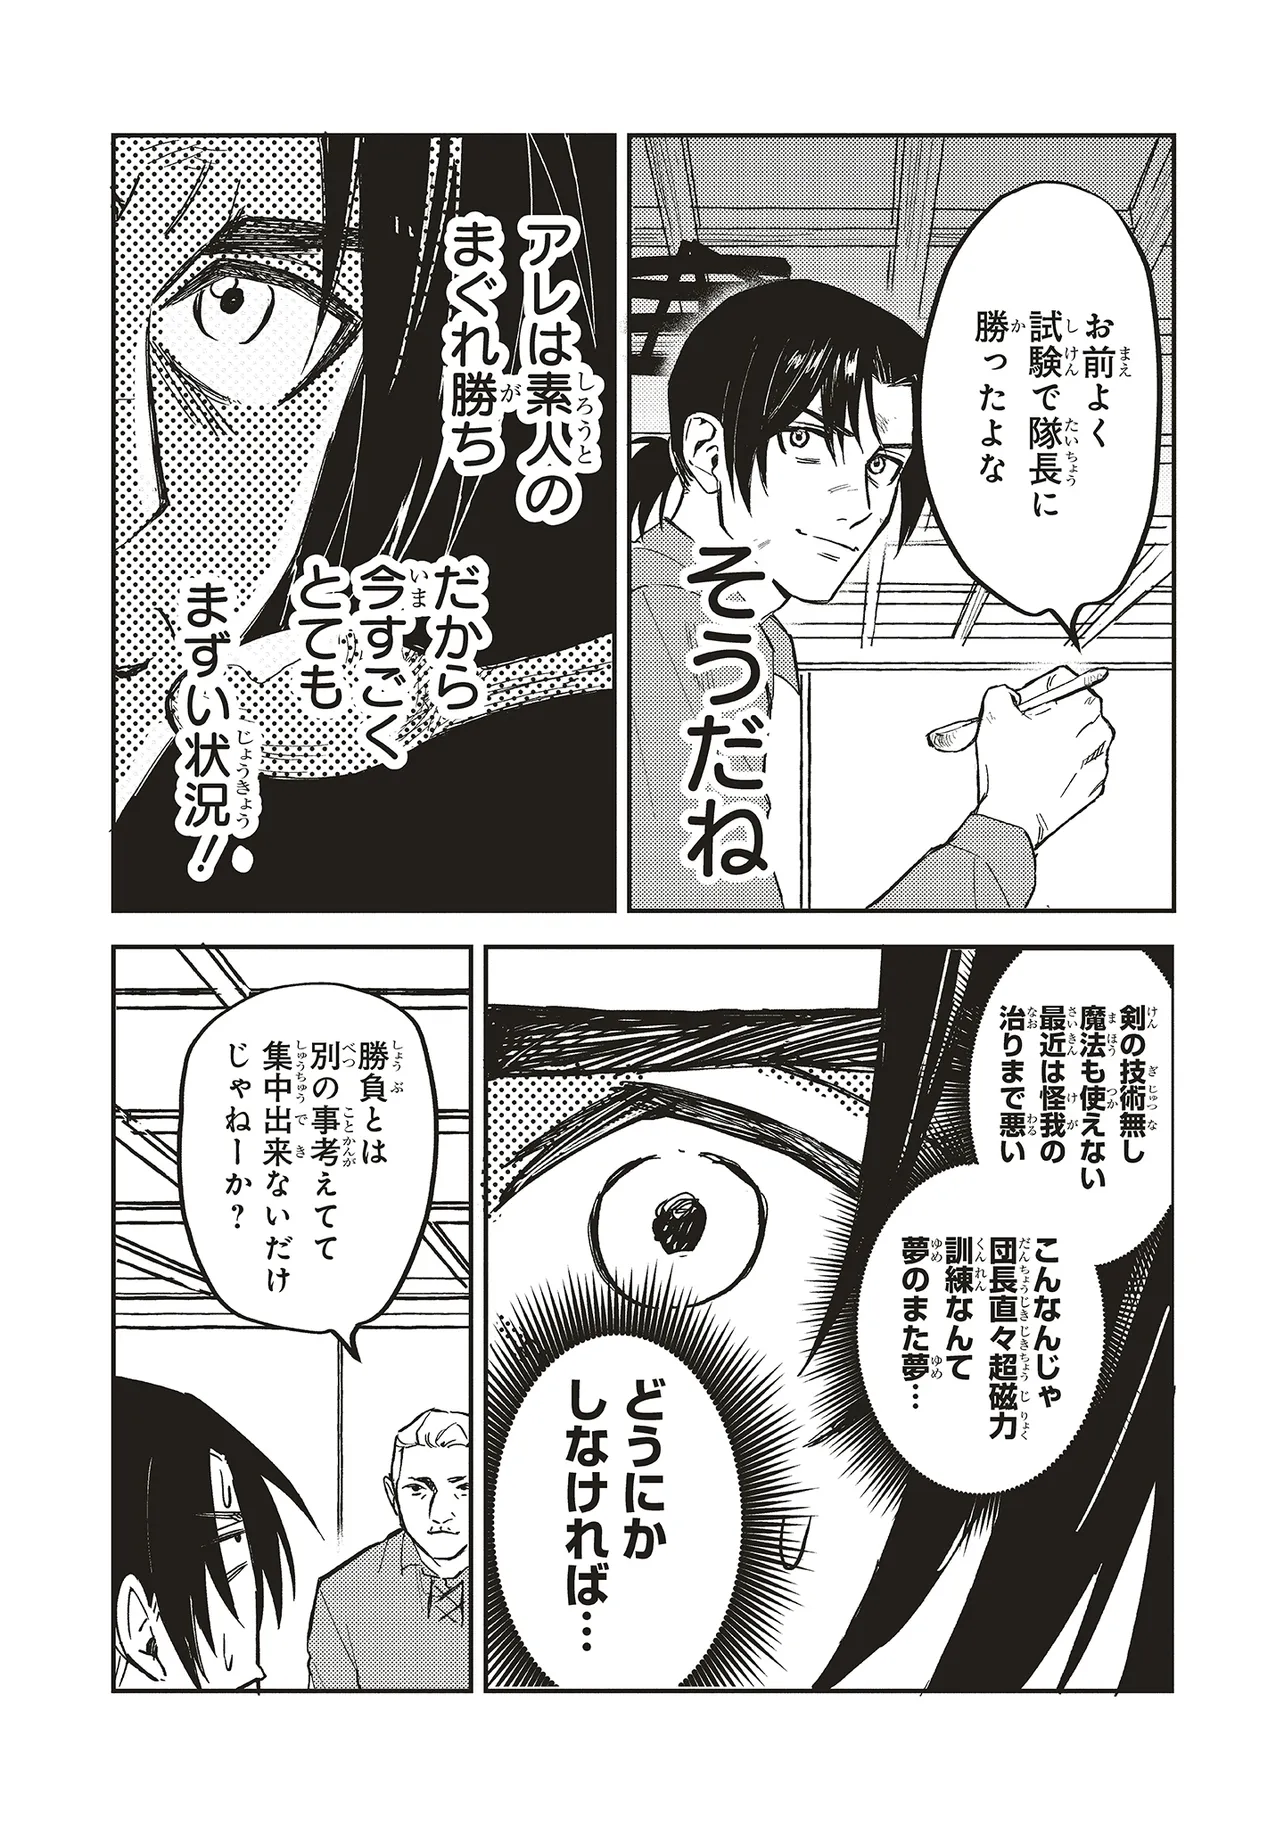 Eiketsu no Do M – Juuzoku Keiken Cheat tte Ari? - Chapter 8.2 - Page 2